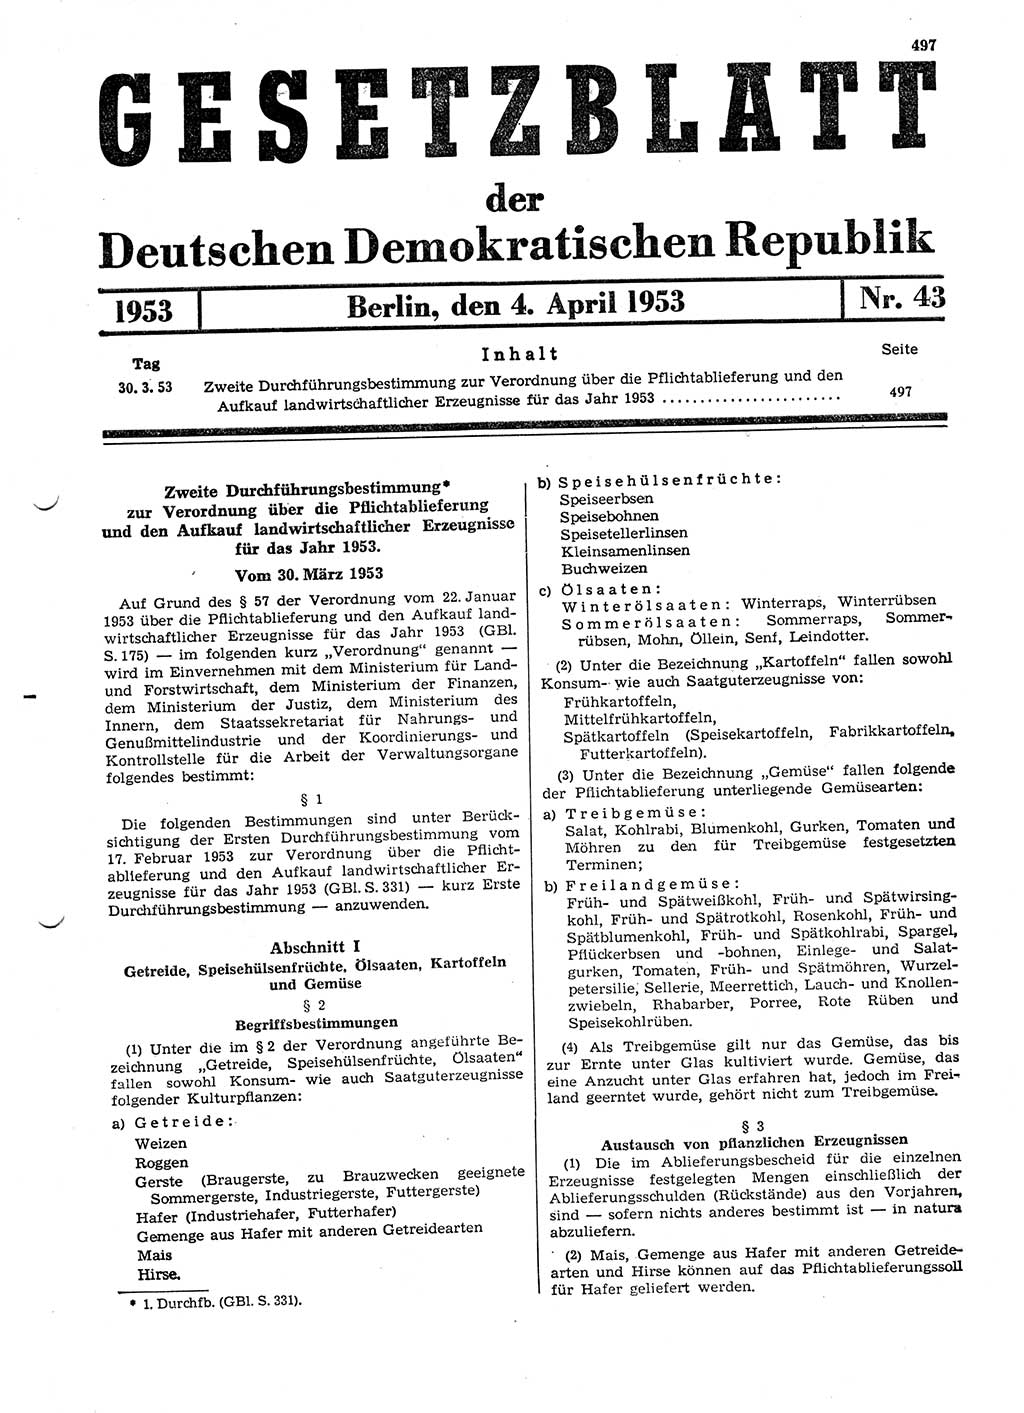 Gesetzblatt (GBl.) der Deutschen Demokratischen Republik (DDR) 1953, Seite 497 (GBl. DDR 1953, S. 497)